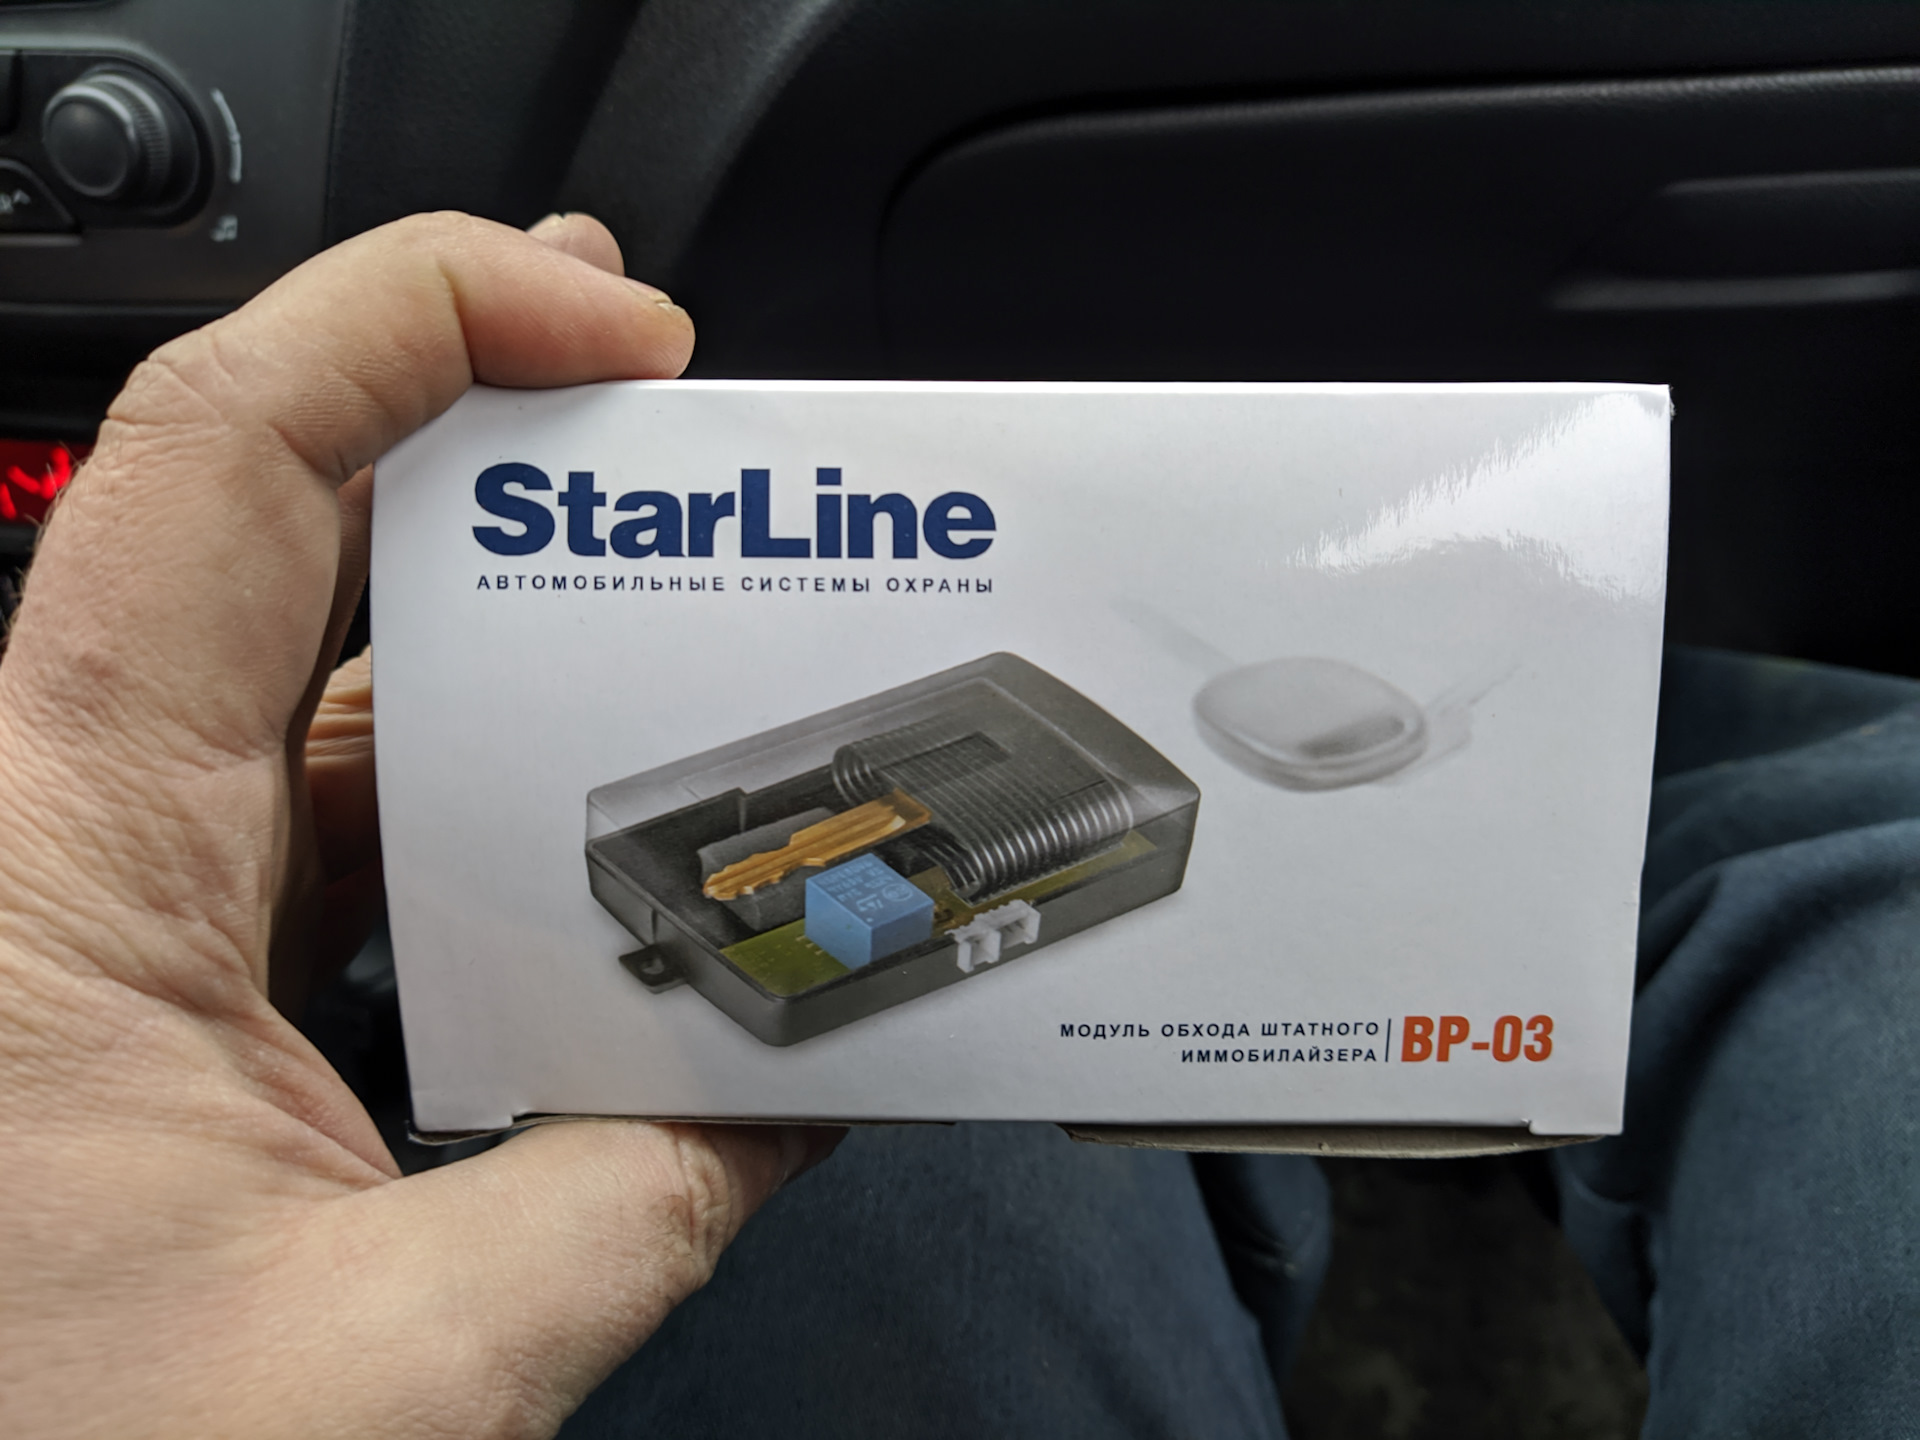 Старлайн без ключа. Модуль обхода иммобилайзера STARLINE а91. Блок обхода иммобилайзера STARLINE a91. Модуль обхода иммобилайзера для старлайн 63. Блок. Обходчик иммобилайзера. STARLINE a91.